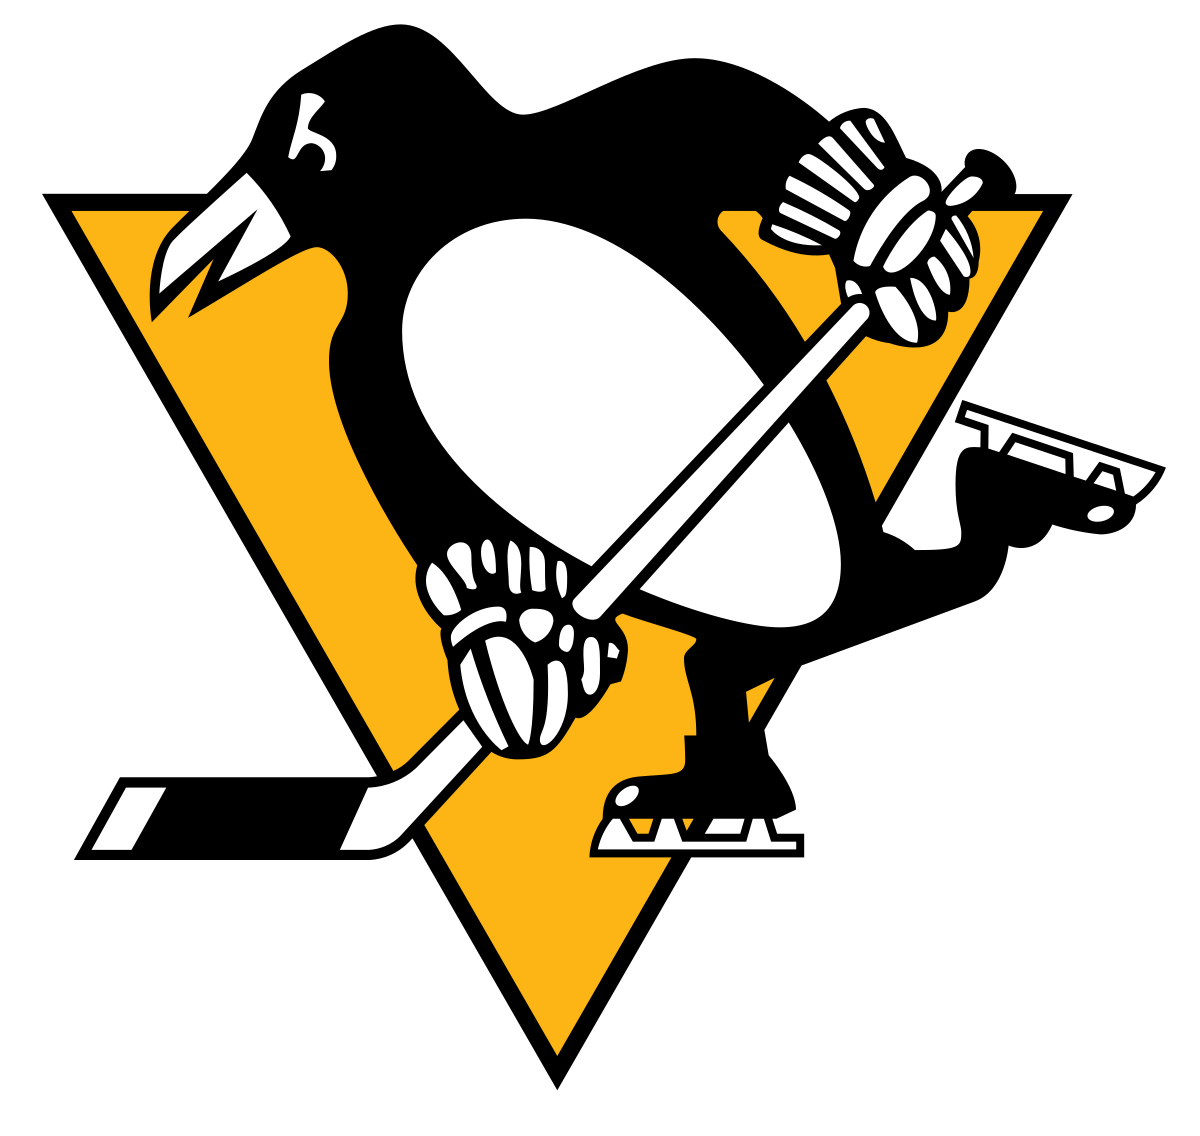 Pittsburgh_Penguins_logo_(2016).svg.png